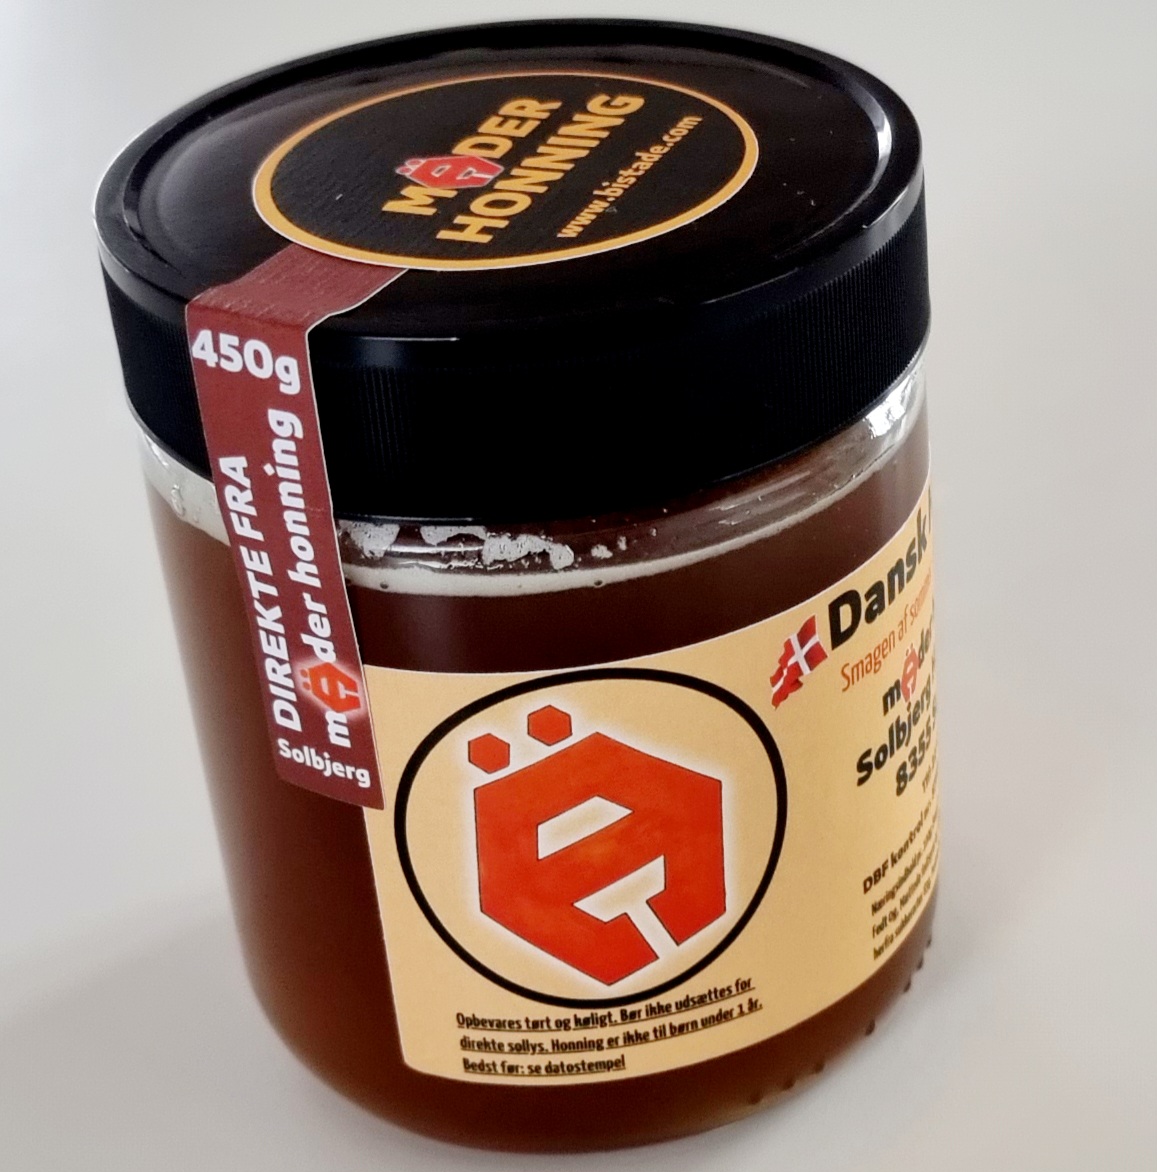 Dansk honning avlet i egen bigård. Mäder Honning 450g Skovhonning fra Solbjerg